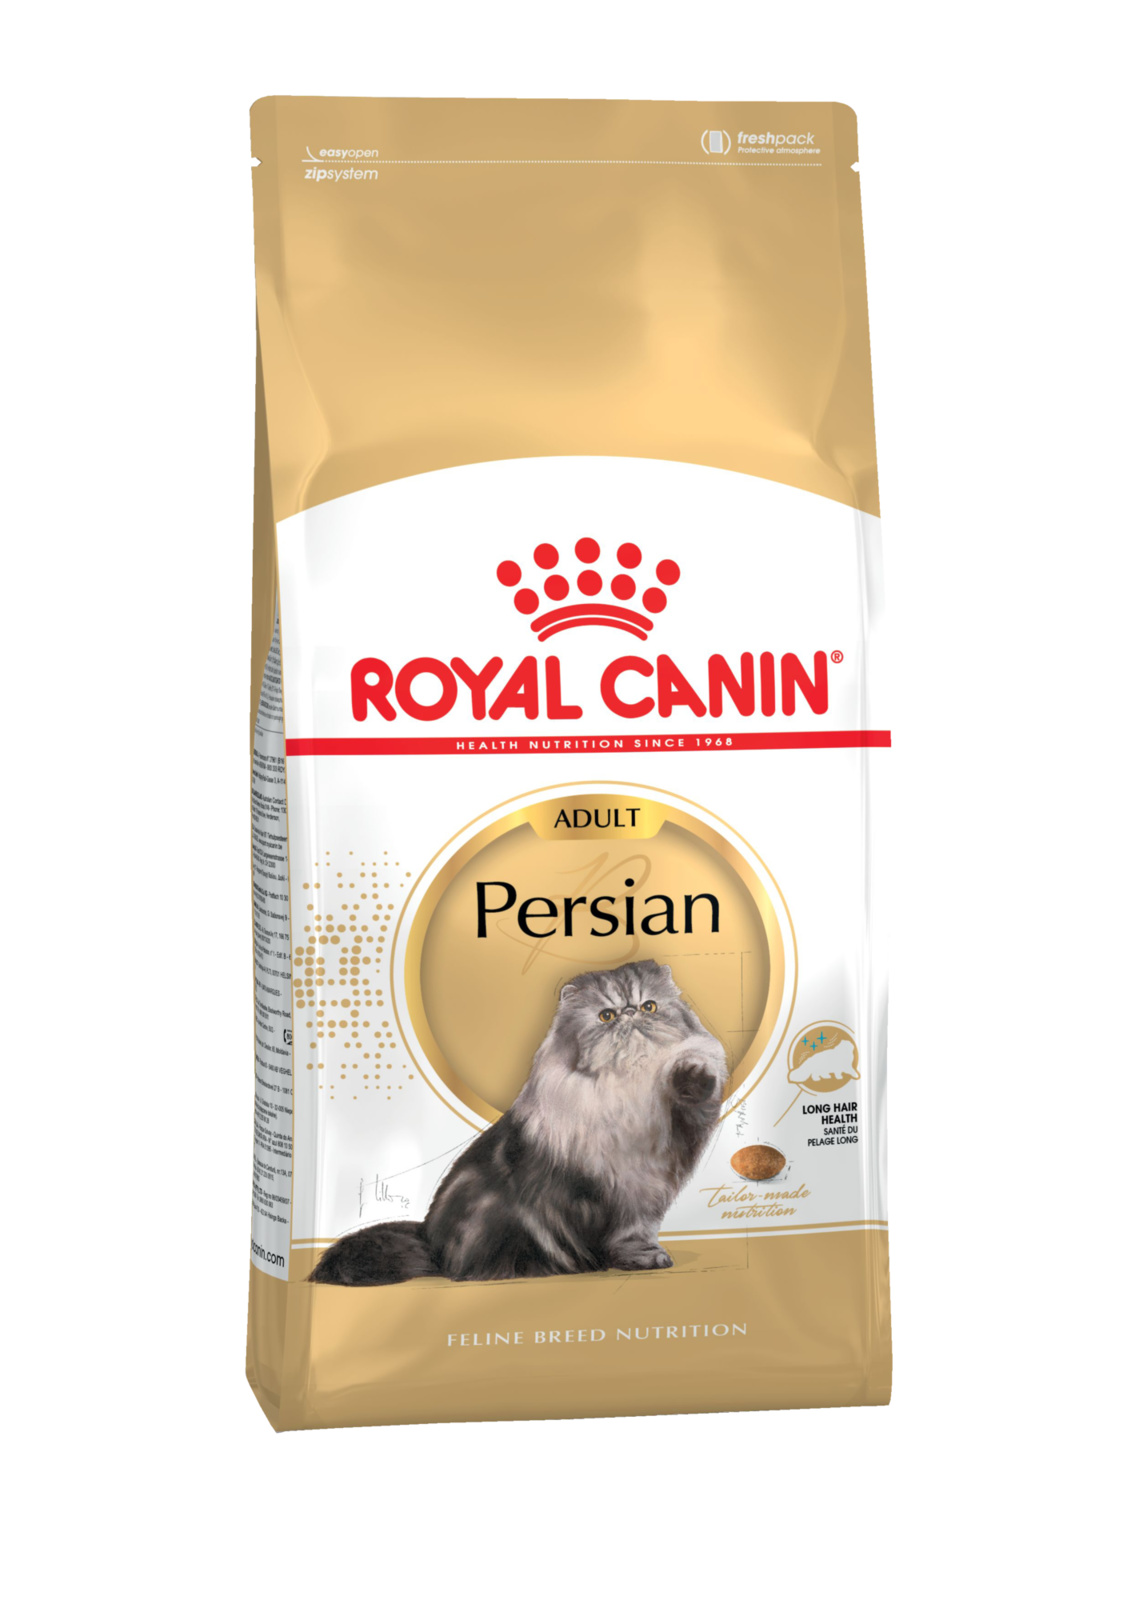 Для персидских кошек 1-10 лет (10 кг)